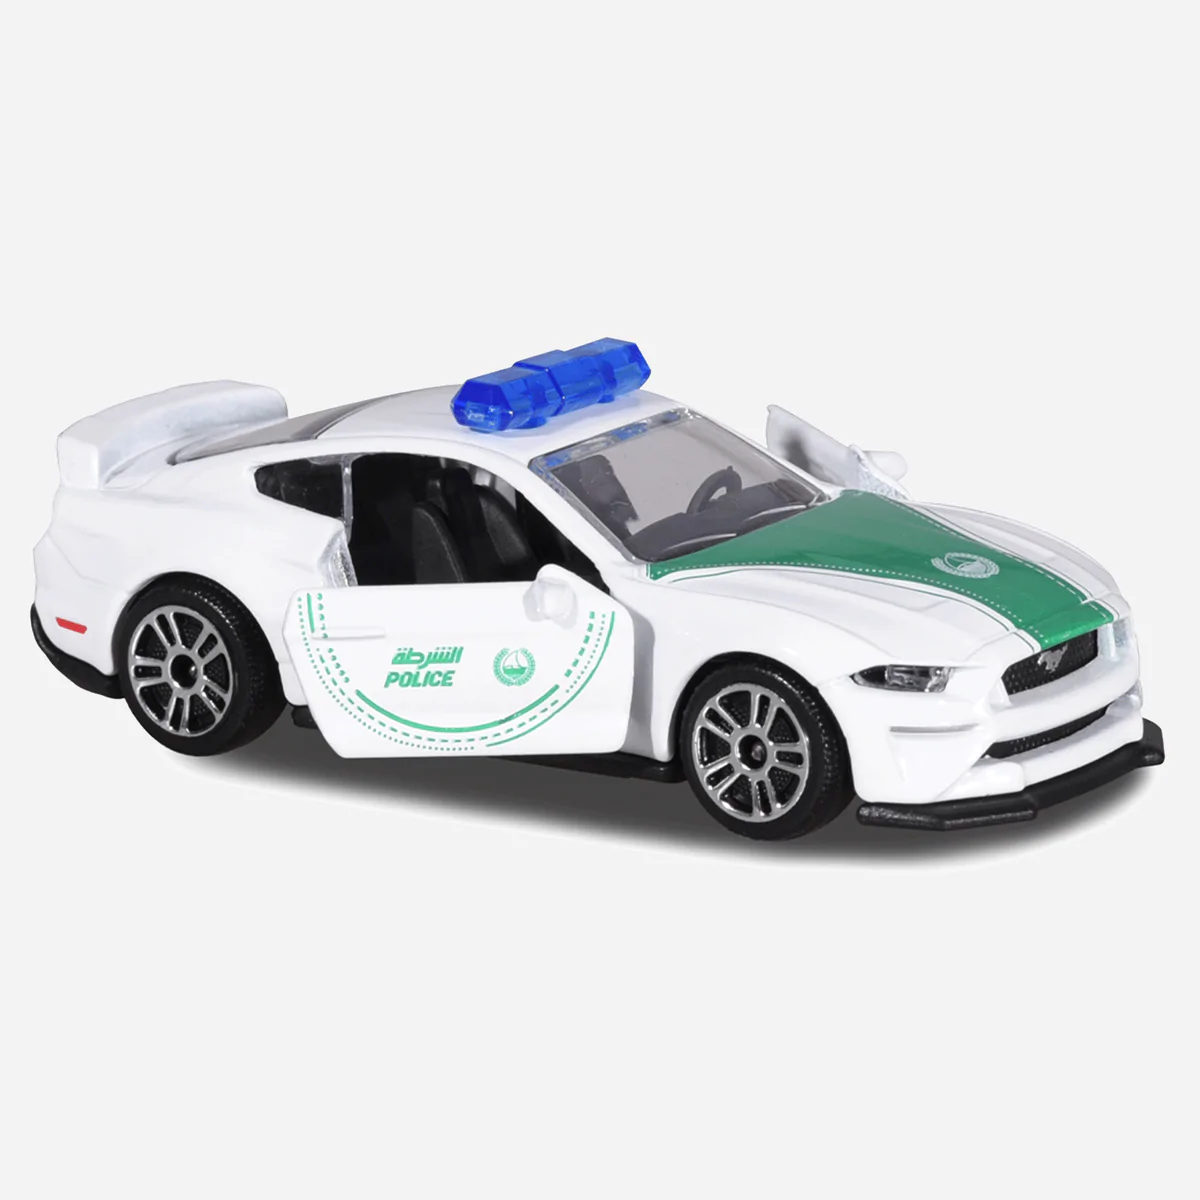 Majorette Dubai Police Blister Card Ford Mustang GT - Thumbnail